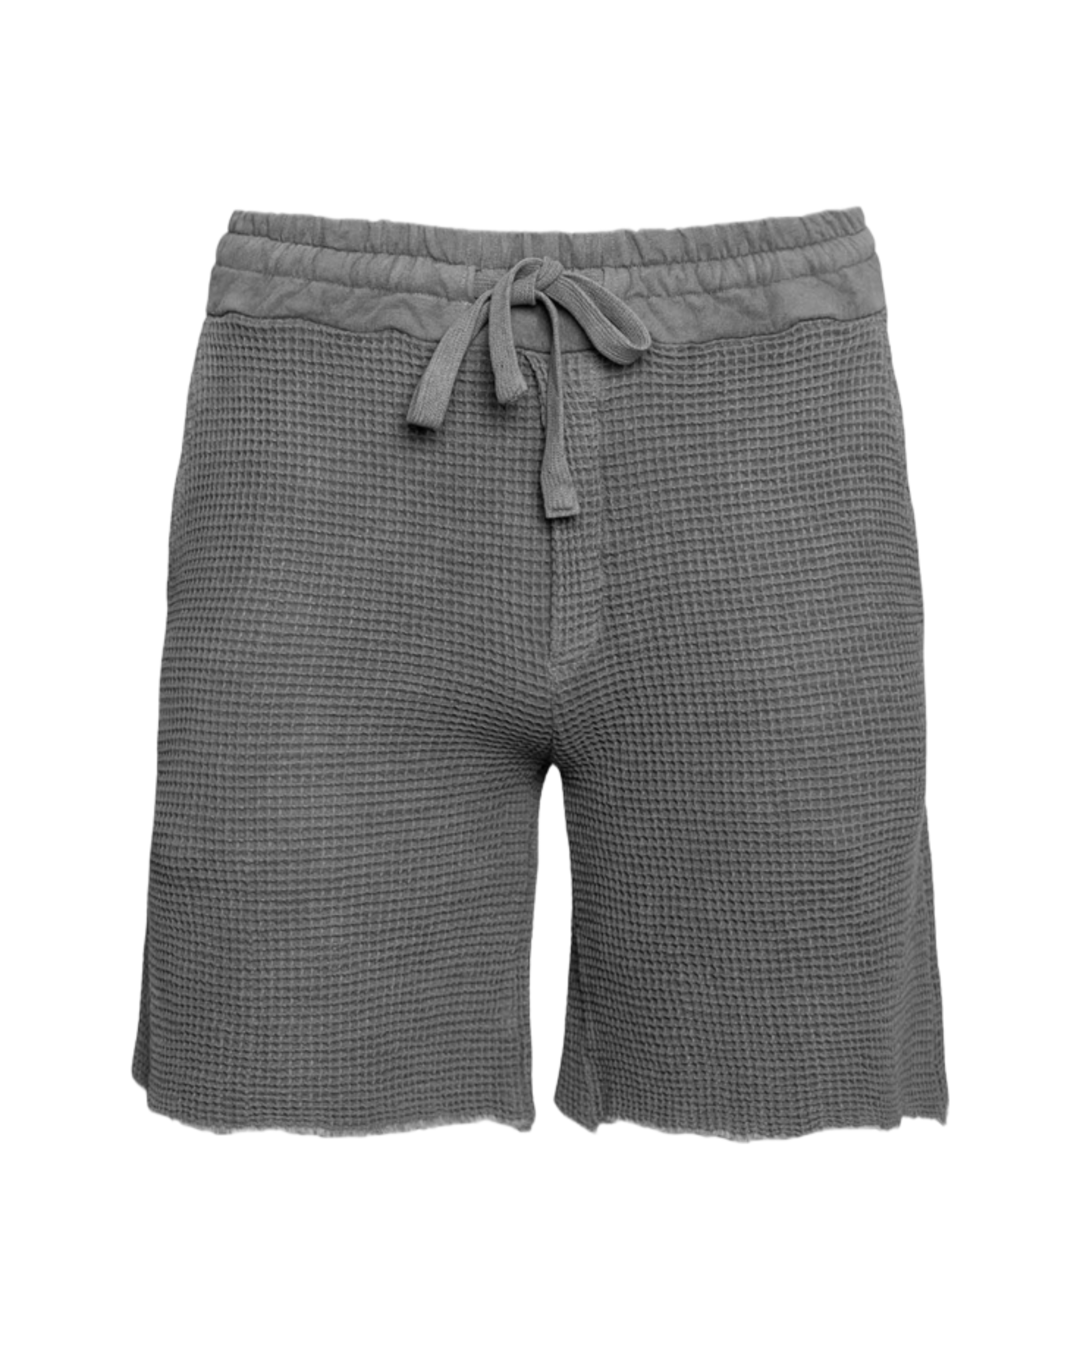 Waffle shorts - grey